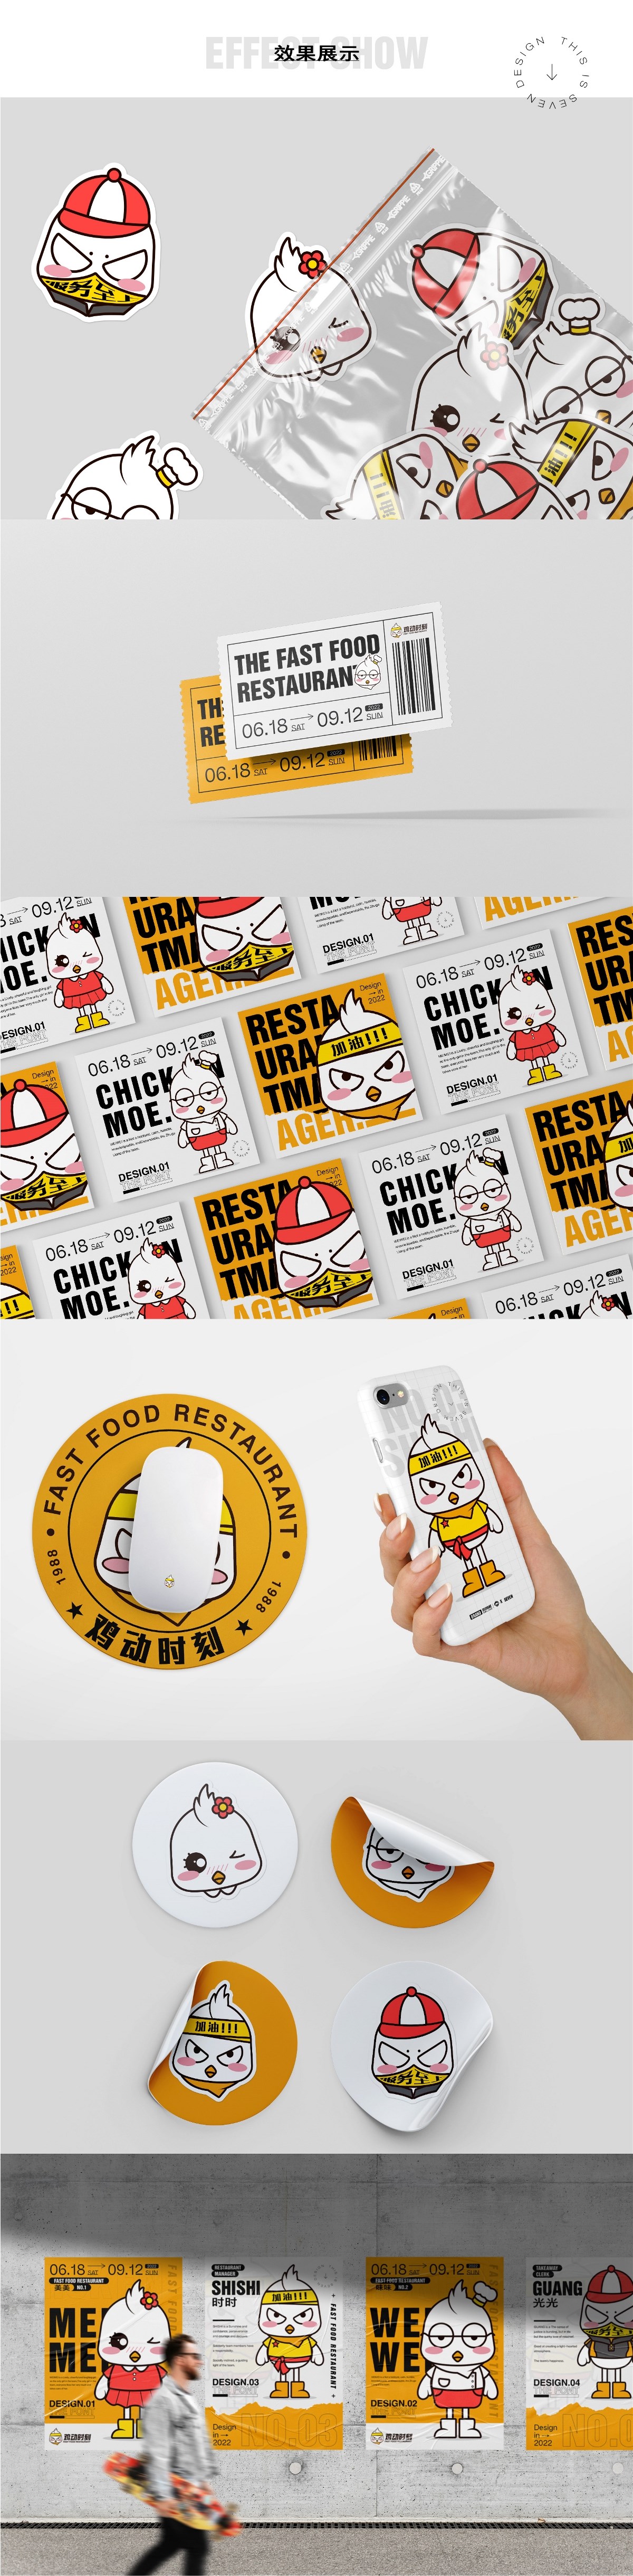 【鸡动时刻】炸鸡快餐厅IP形象设计